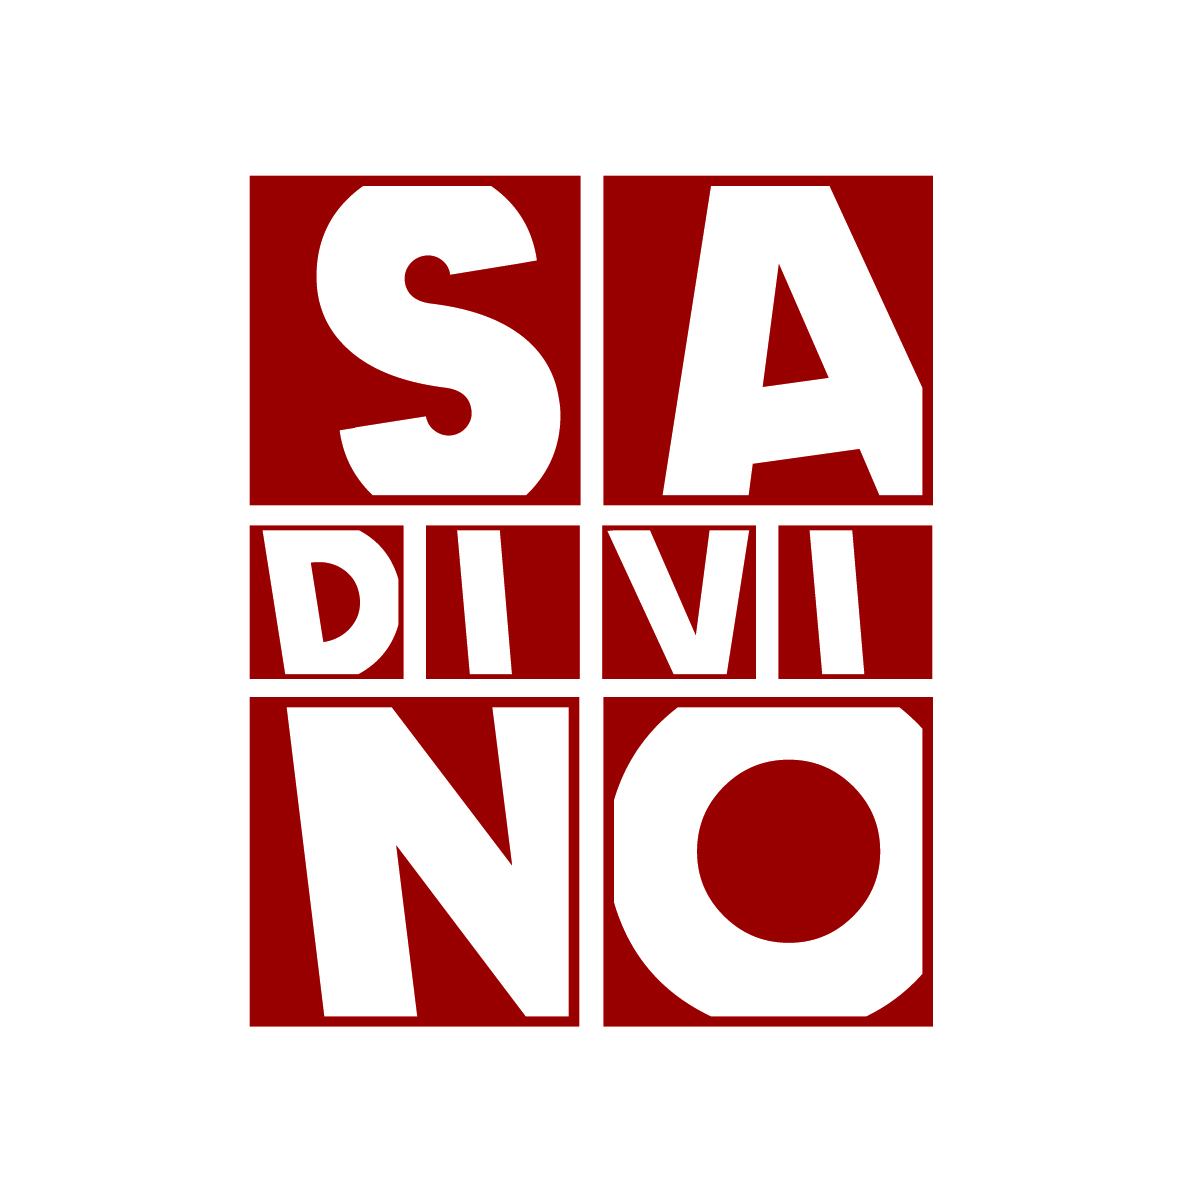 Sadivino - Emilia Romagna